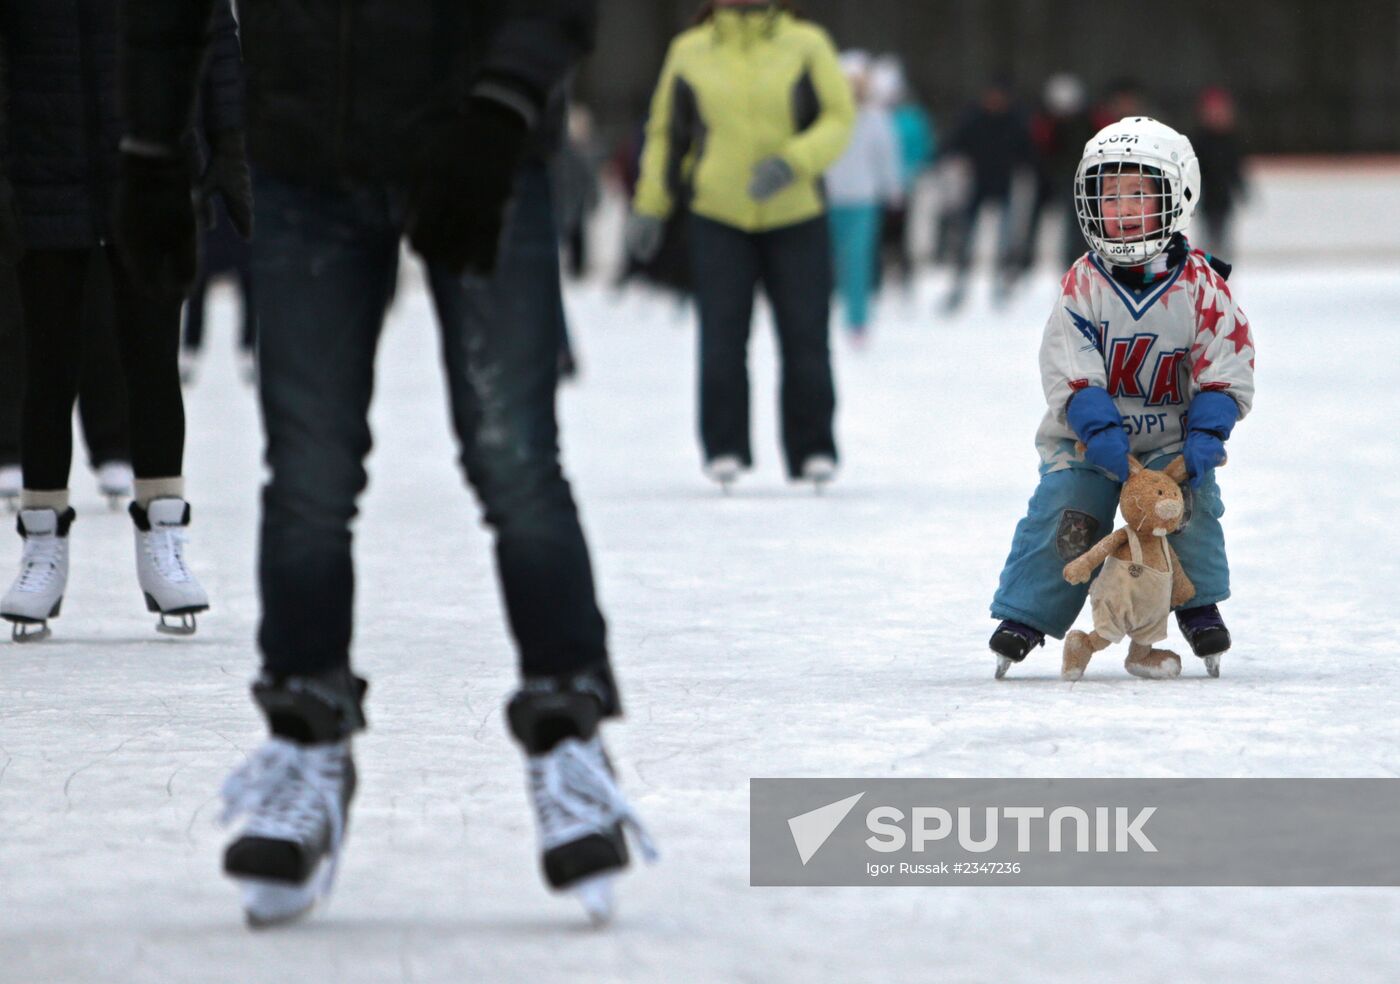 Outdoor skating rink in St. Petersburg